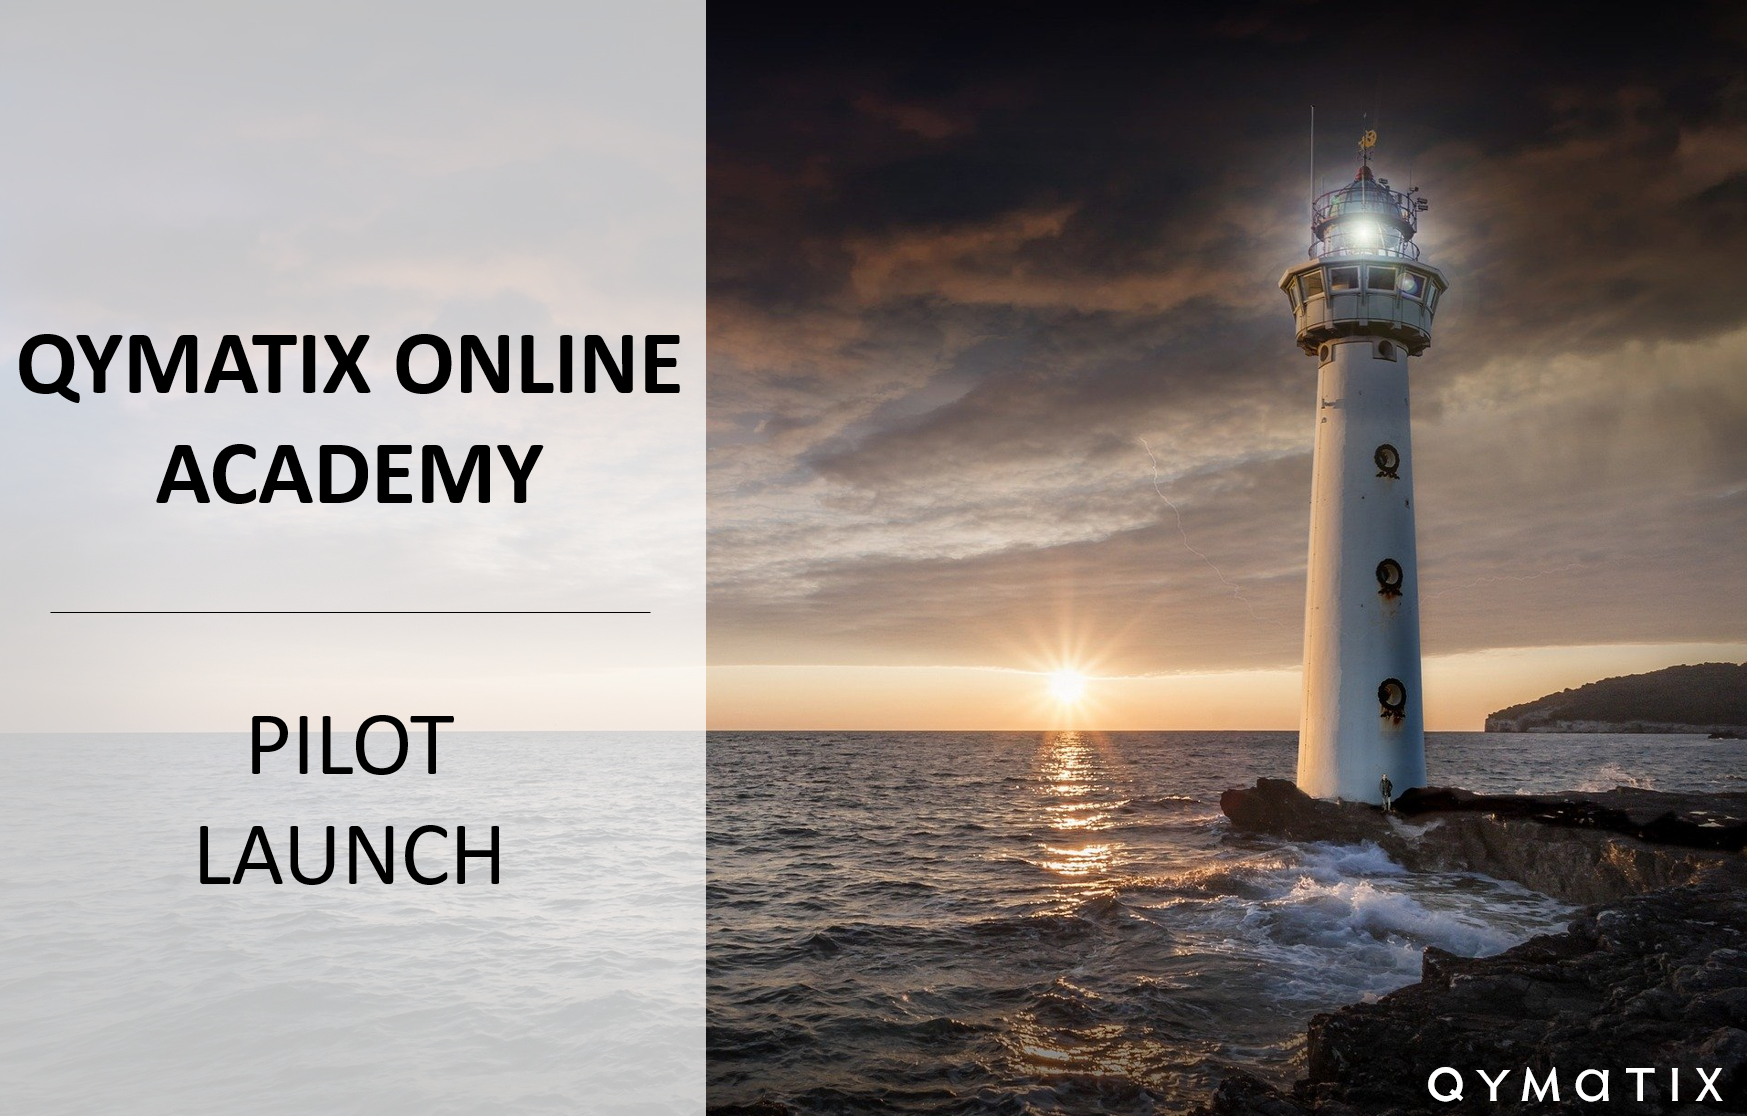 Qymatix Online Academy